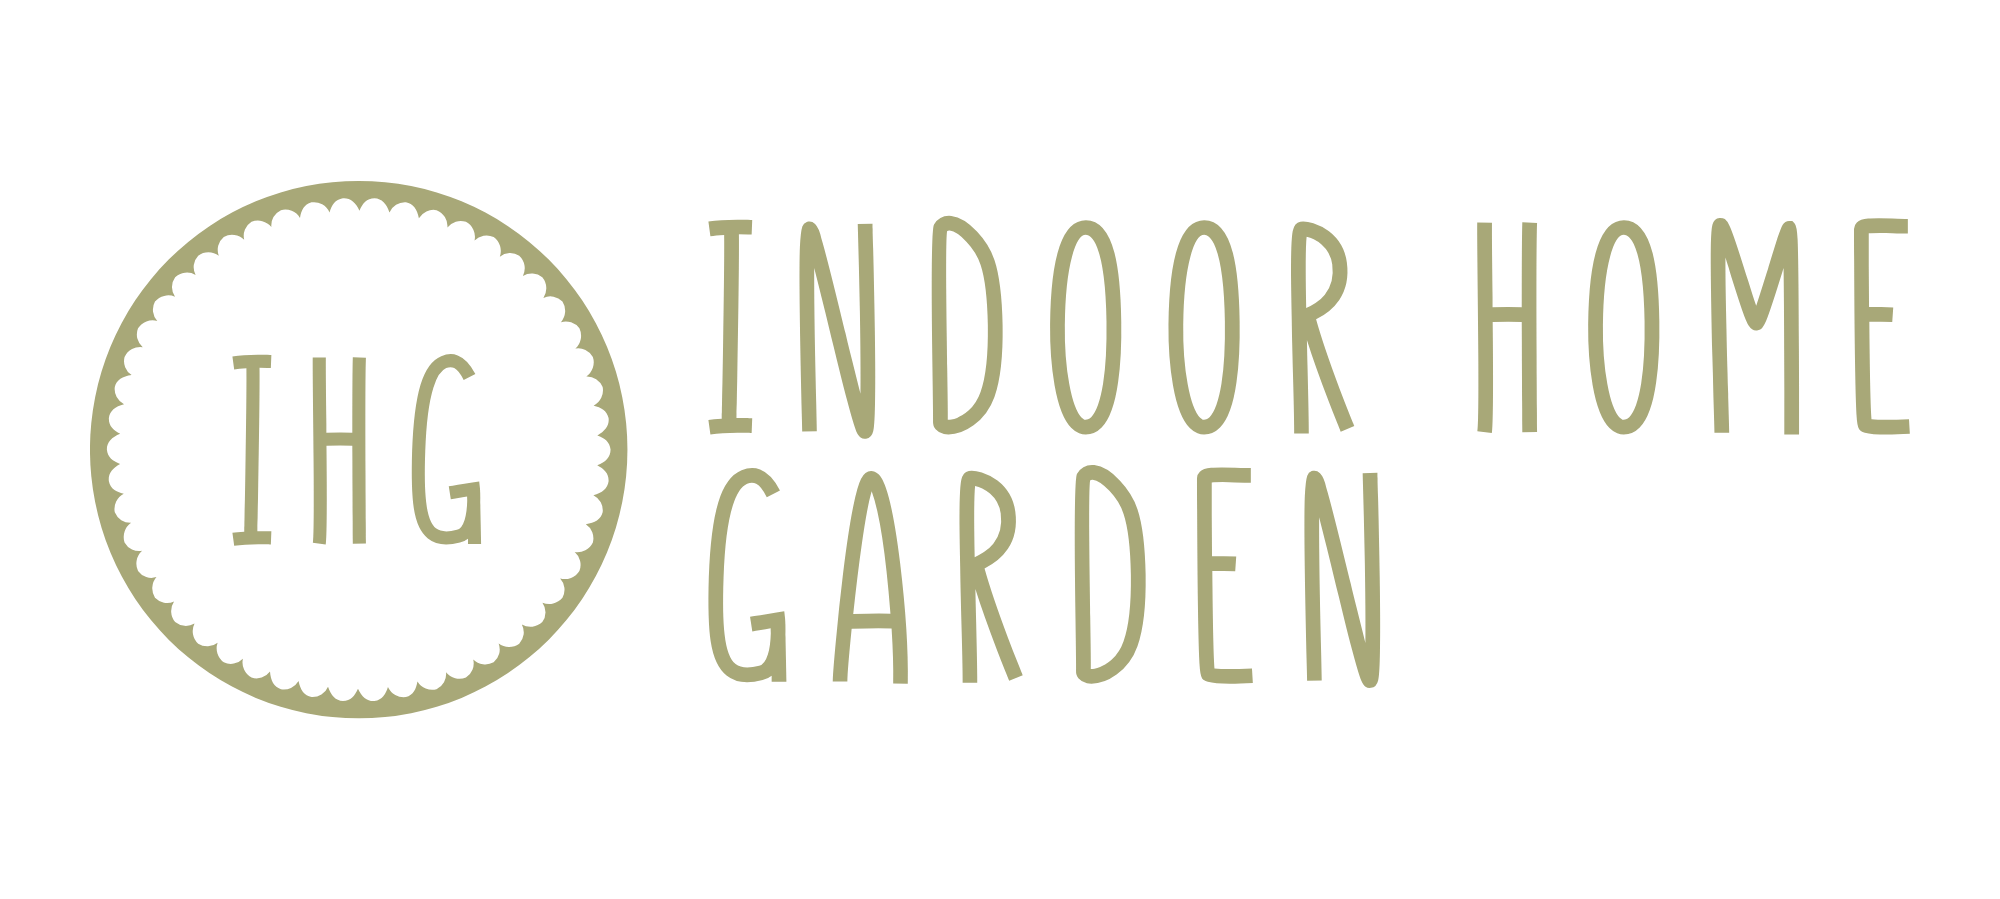 Indoor Home Garden